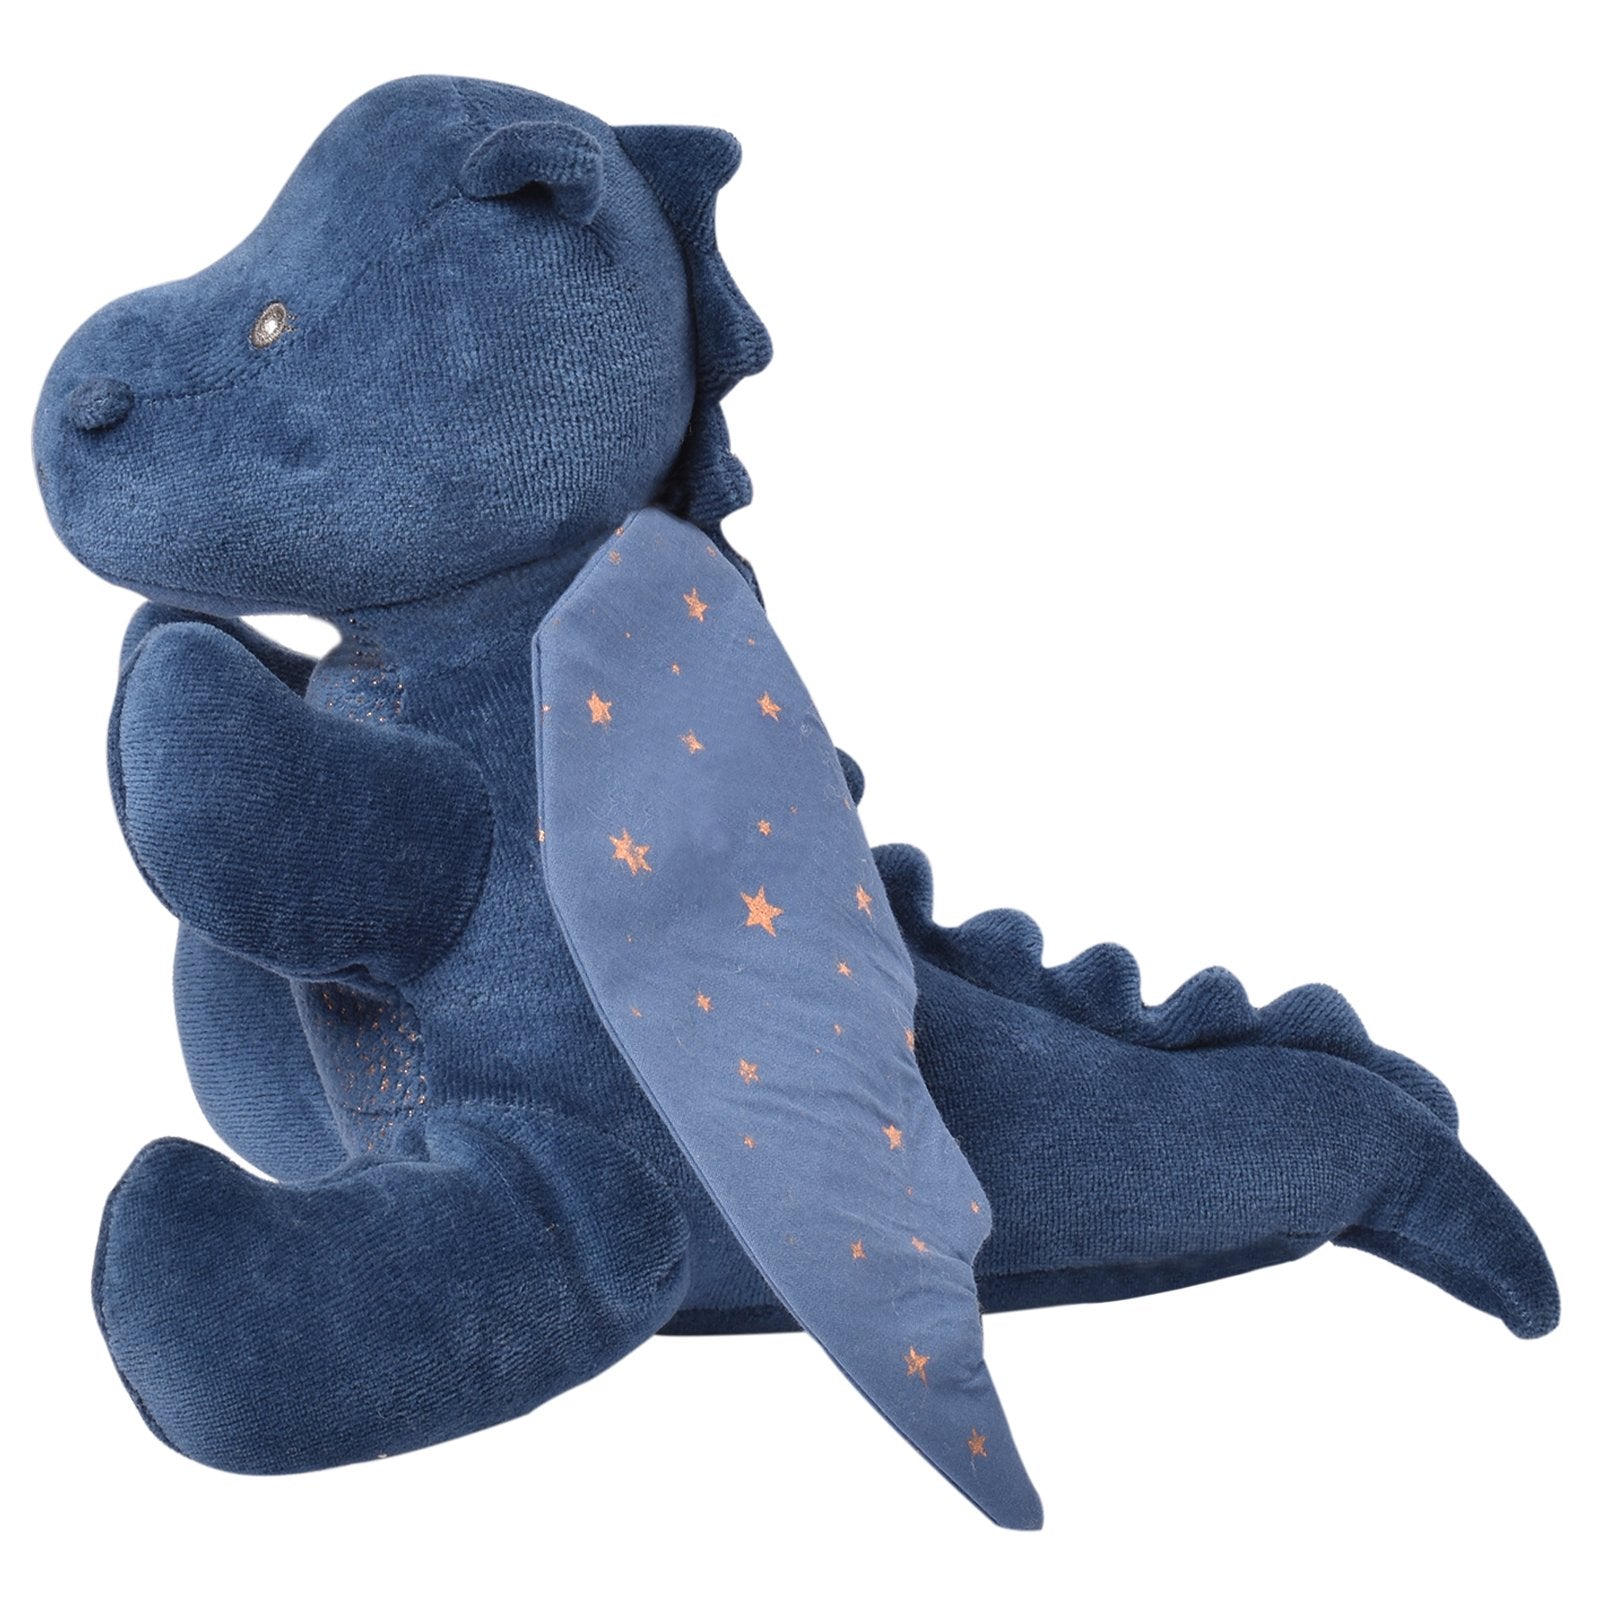 Tikiri Toys Organic Plush Toy - Midnight Dragon